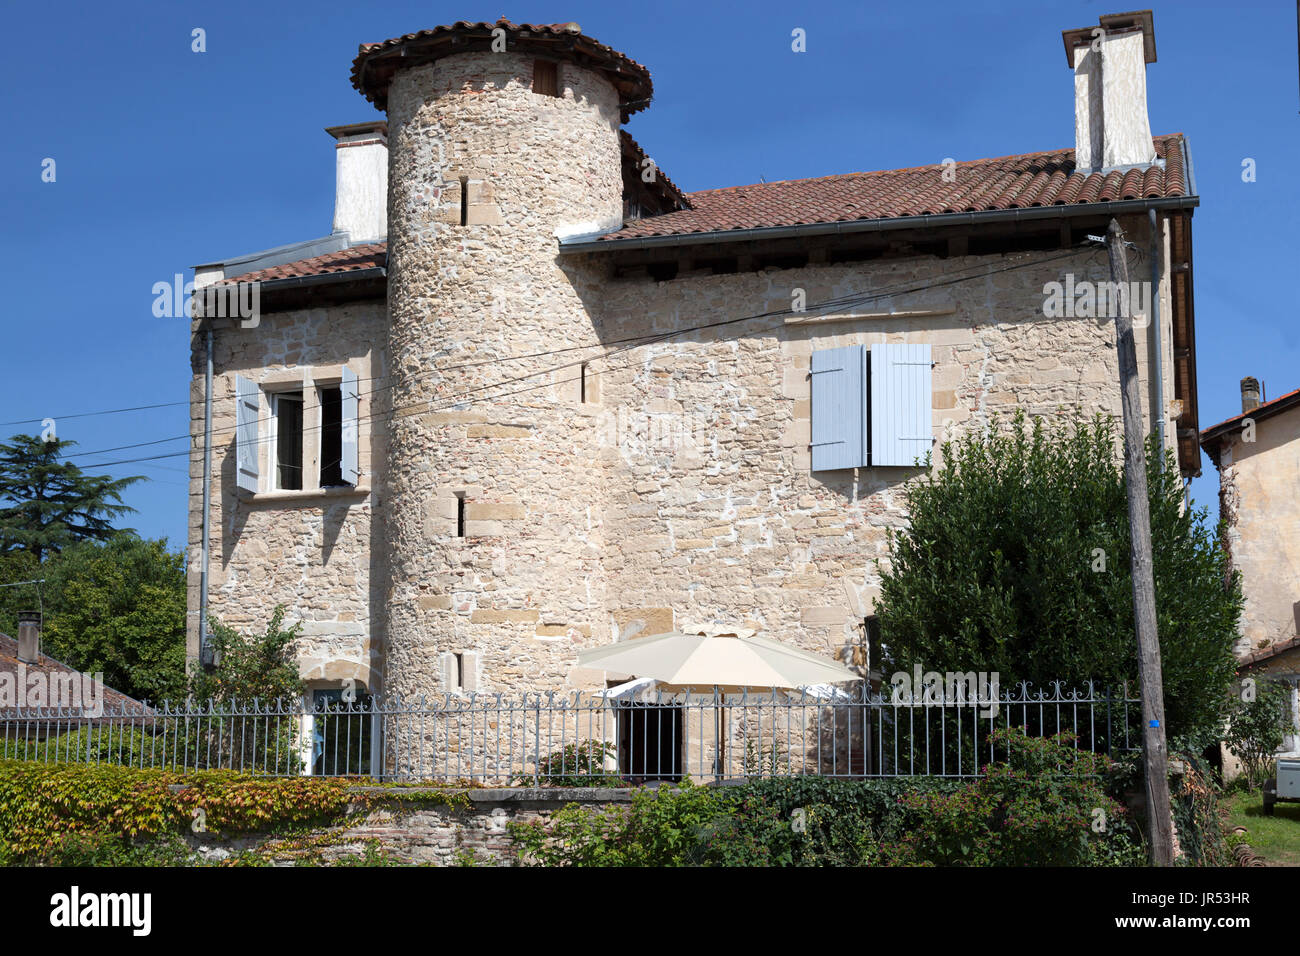 Il ' Bellepeyre' casa fortificata, a a Saubusse (Landes - Aquitaine - Francia). Attualmente restaurato, risale al XIII secolo. Foto Stock